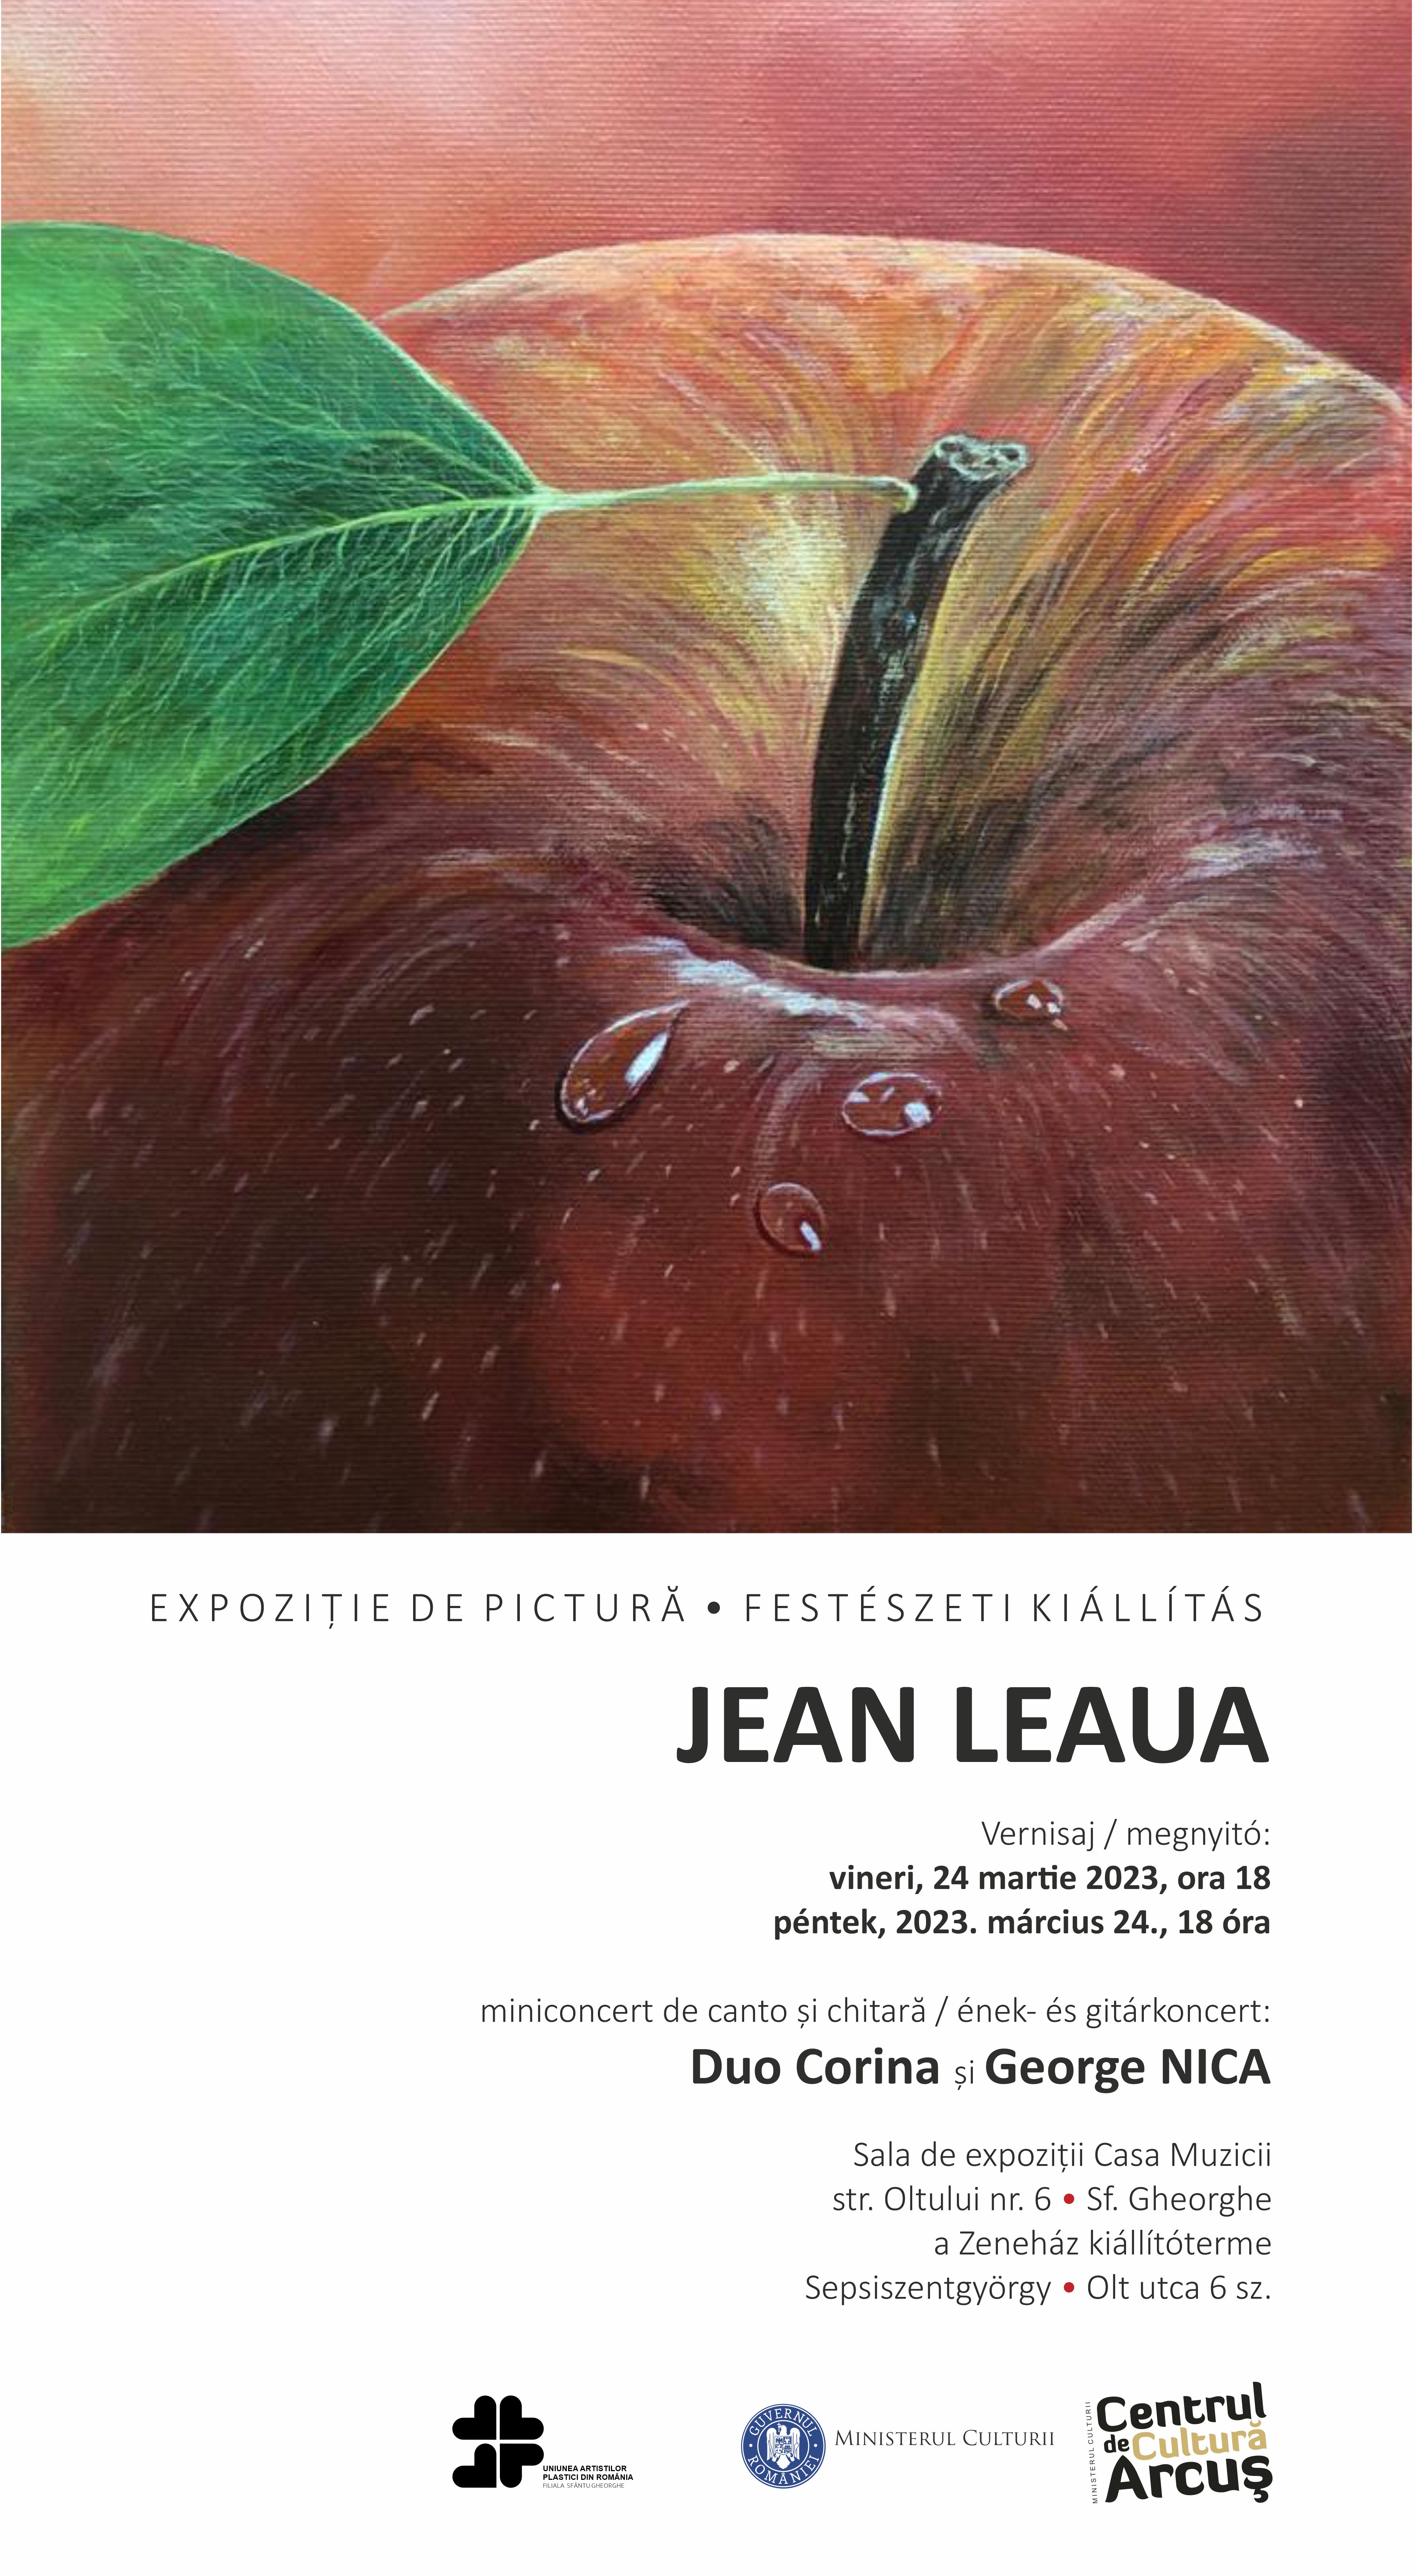 JEAN LEAUA – Expoziție de pictură